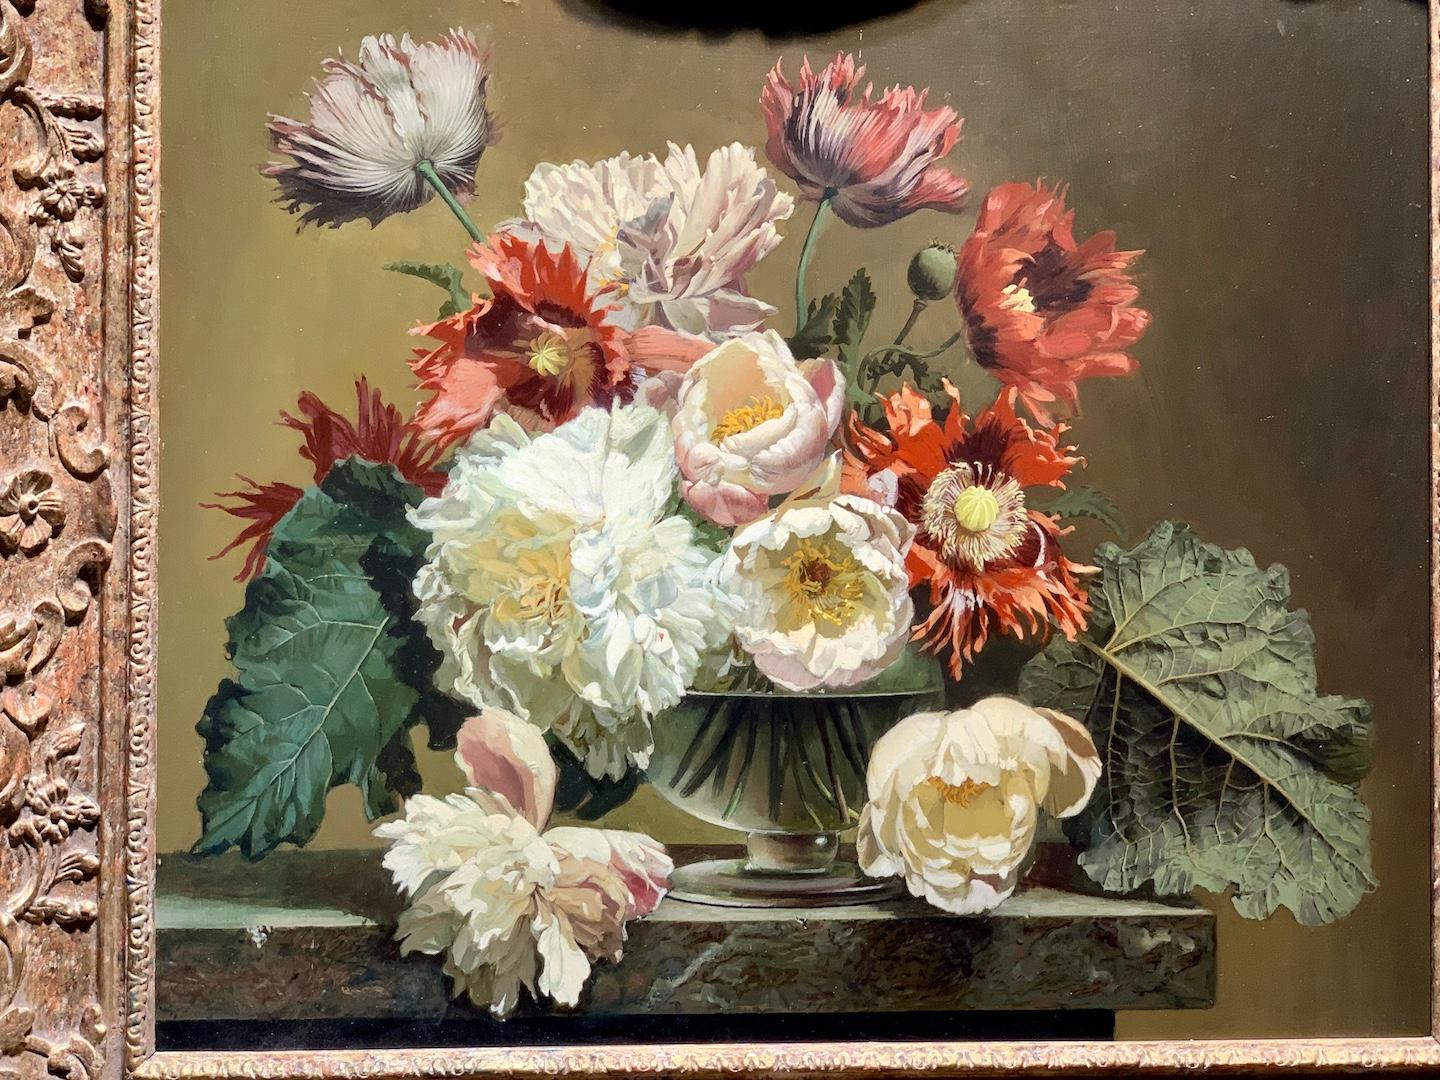 Bennett Oates, 

Feine Qualität Englisch Ende des 20. Jahrhunderts Stillleben von wilden Blumen in einer Vase.

Oates war ein englischer Maler von Blumenmotiven in der letzten Hälfte des 20. Jahrhunderts. 

Bennett Oates wurde 1928 in London